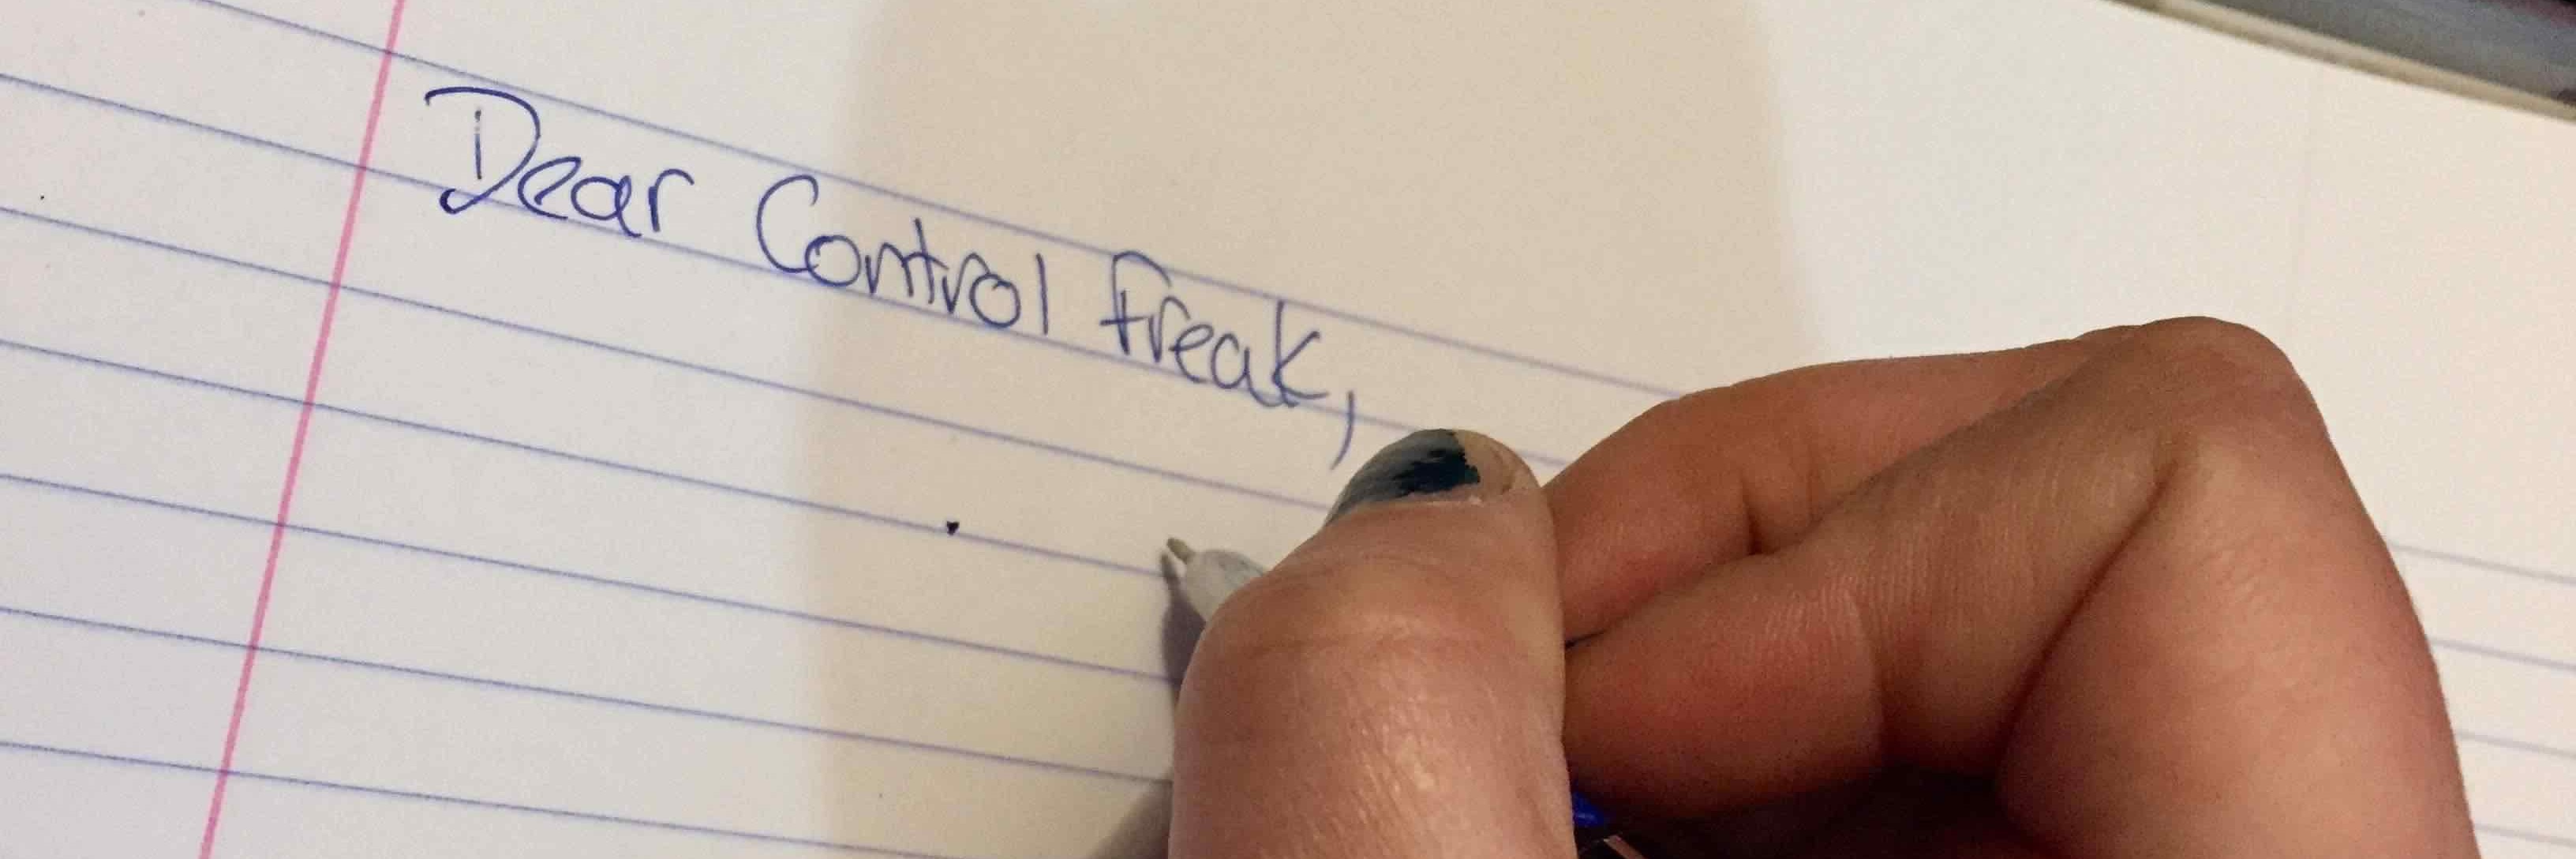 woman writing 'dear control freak' on a sheet of paper